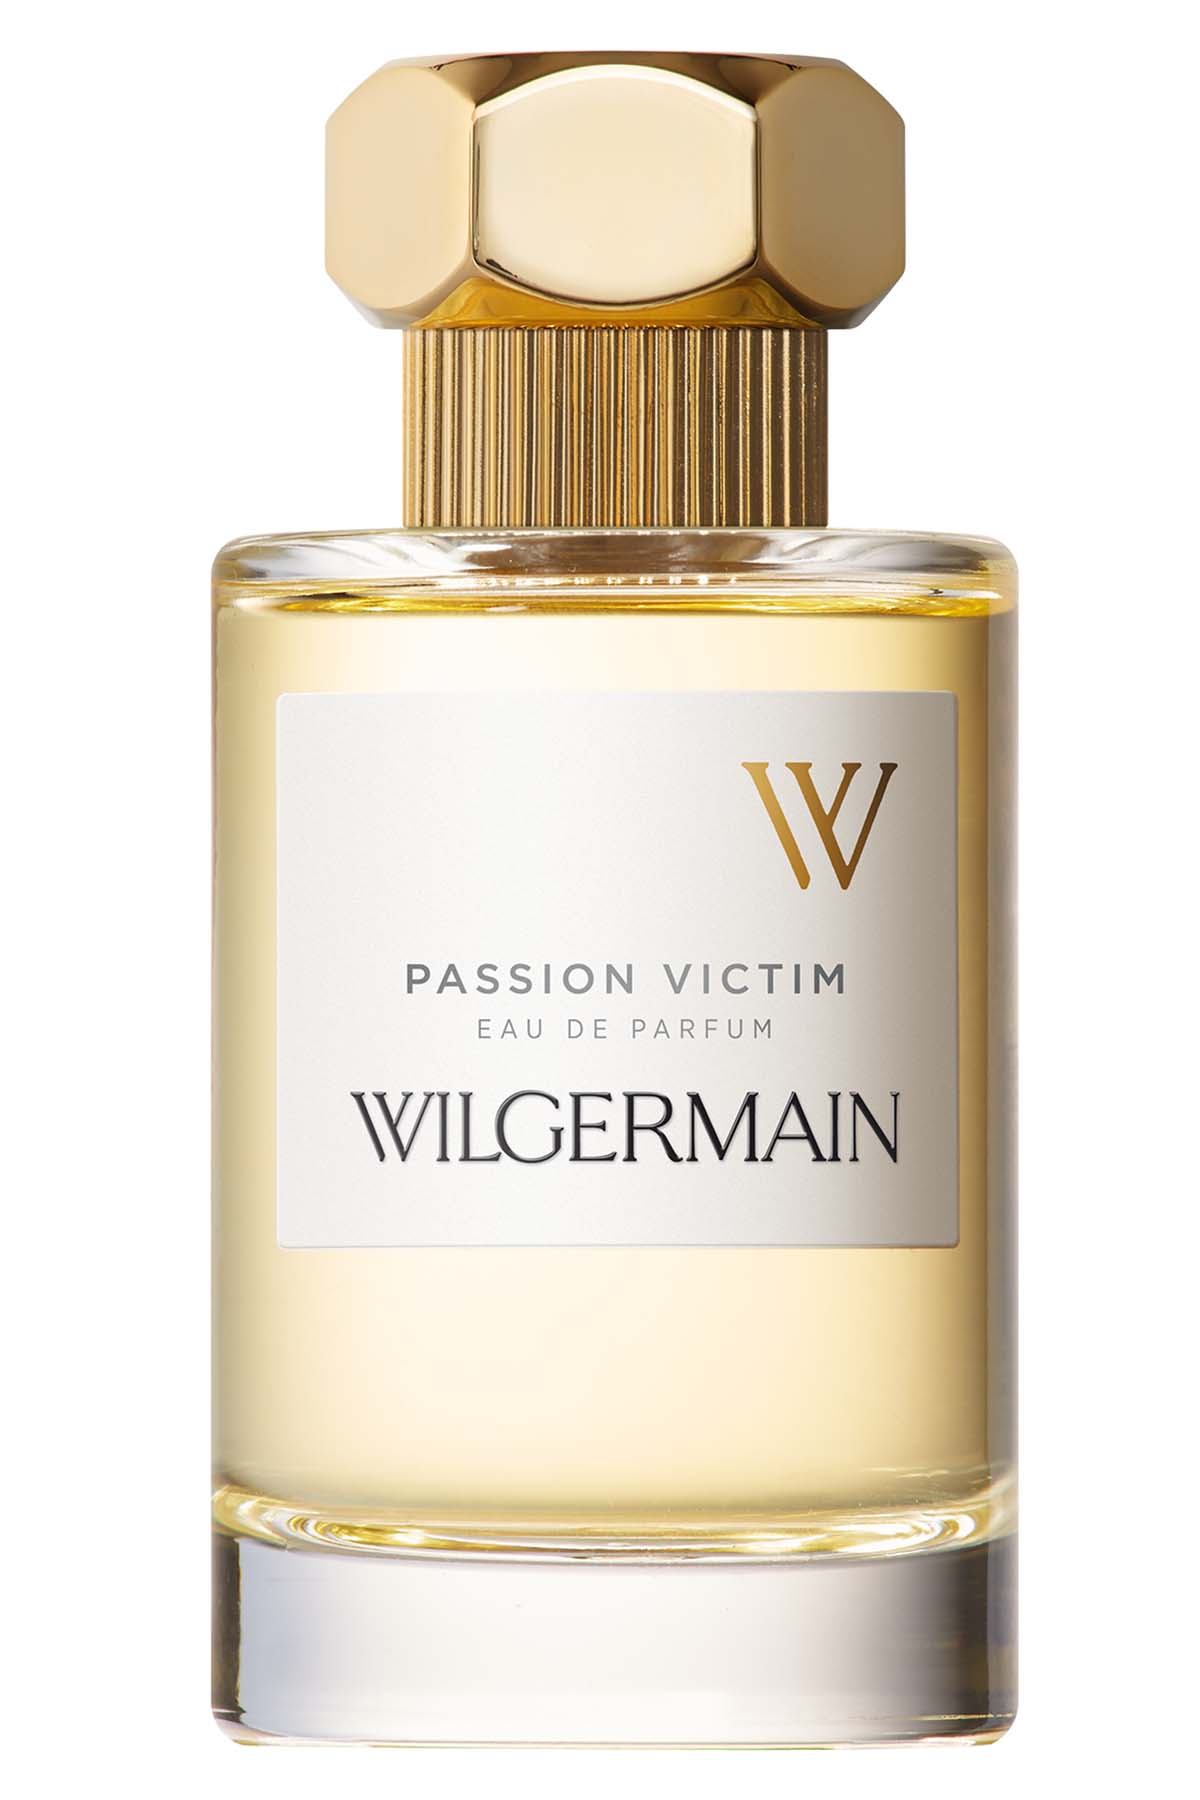 Wilgermain Passion Victim Eau de Parfum